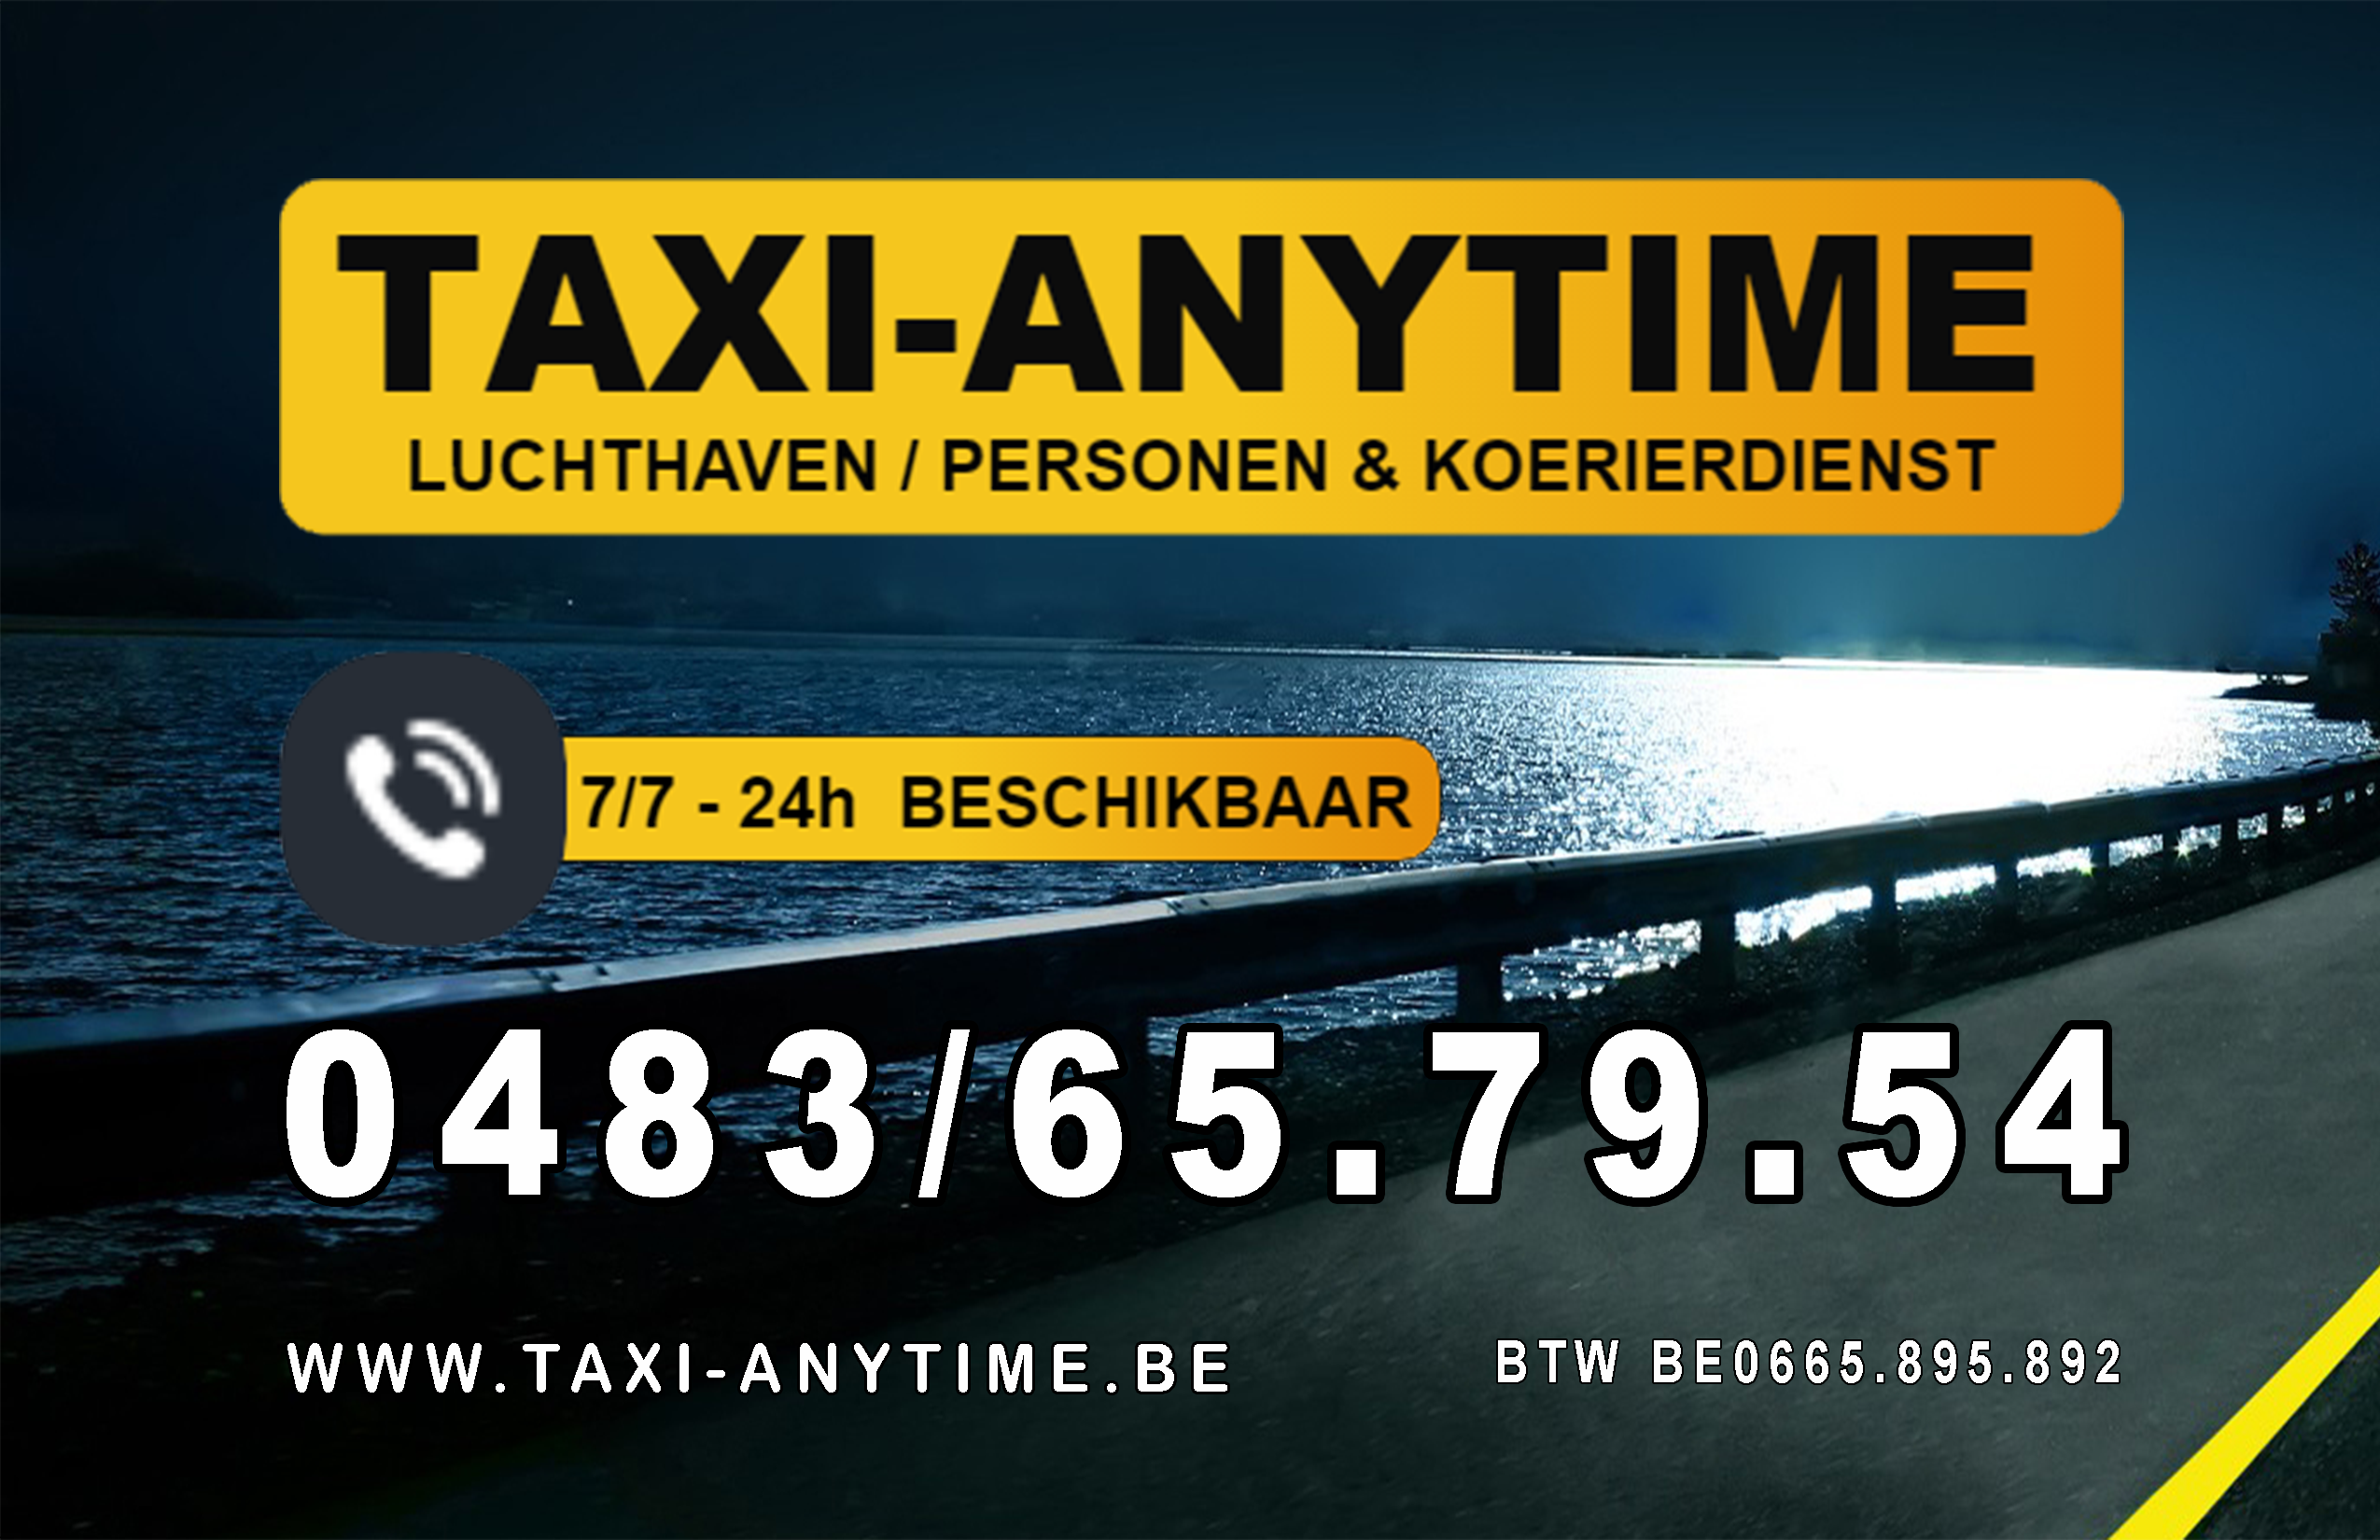 taxibedrijven met luchthavenvervoer Vinkt Taxi-anytime